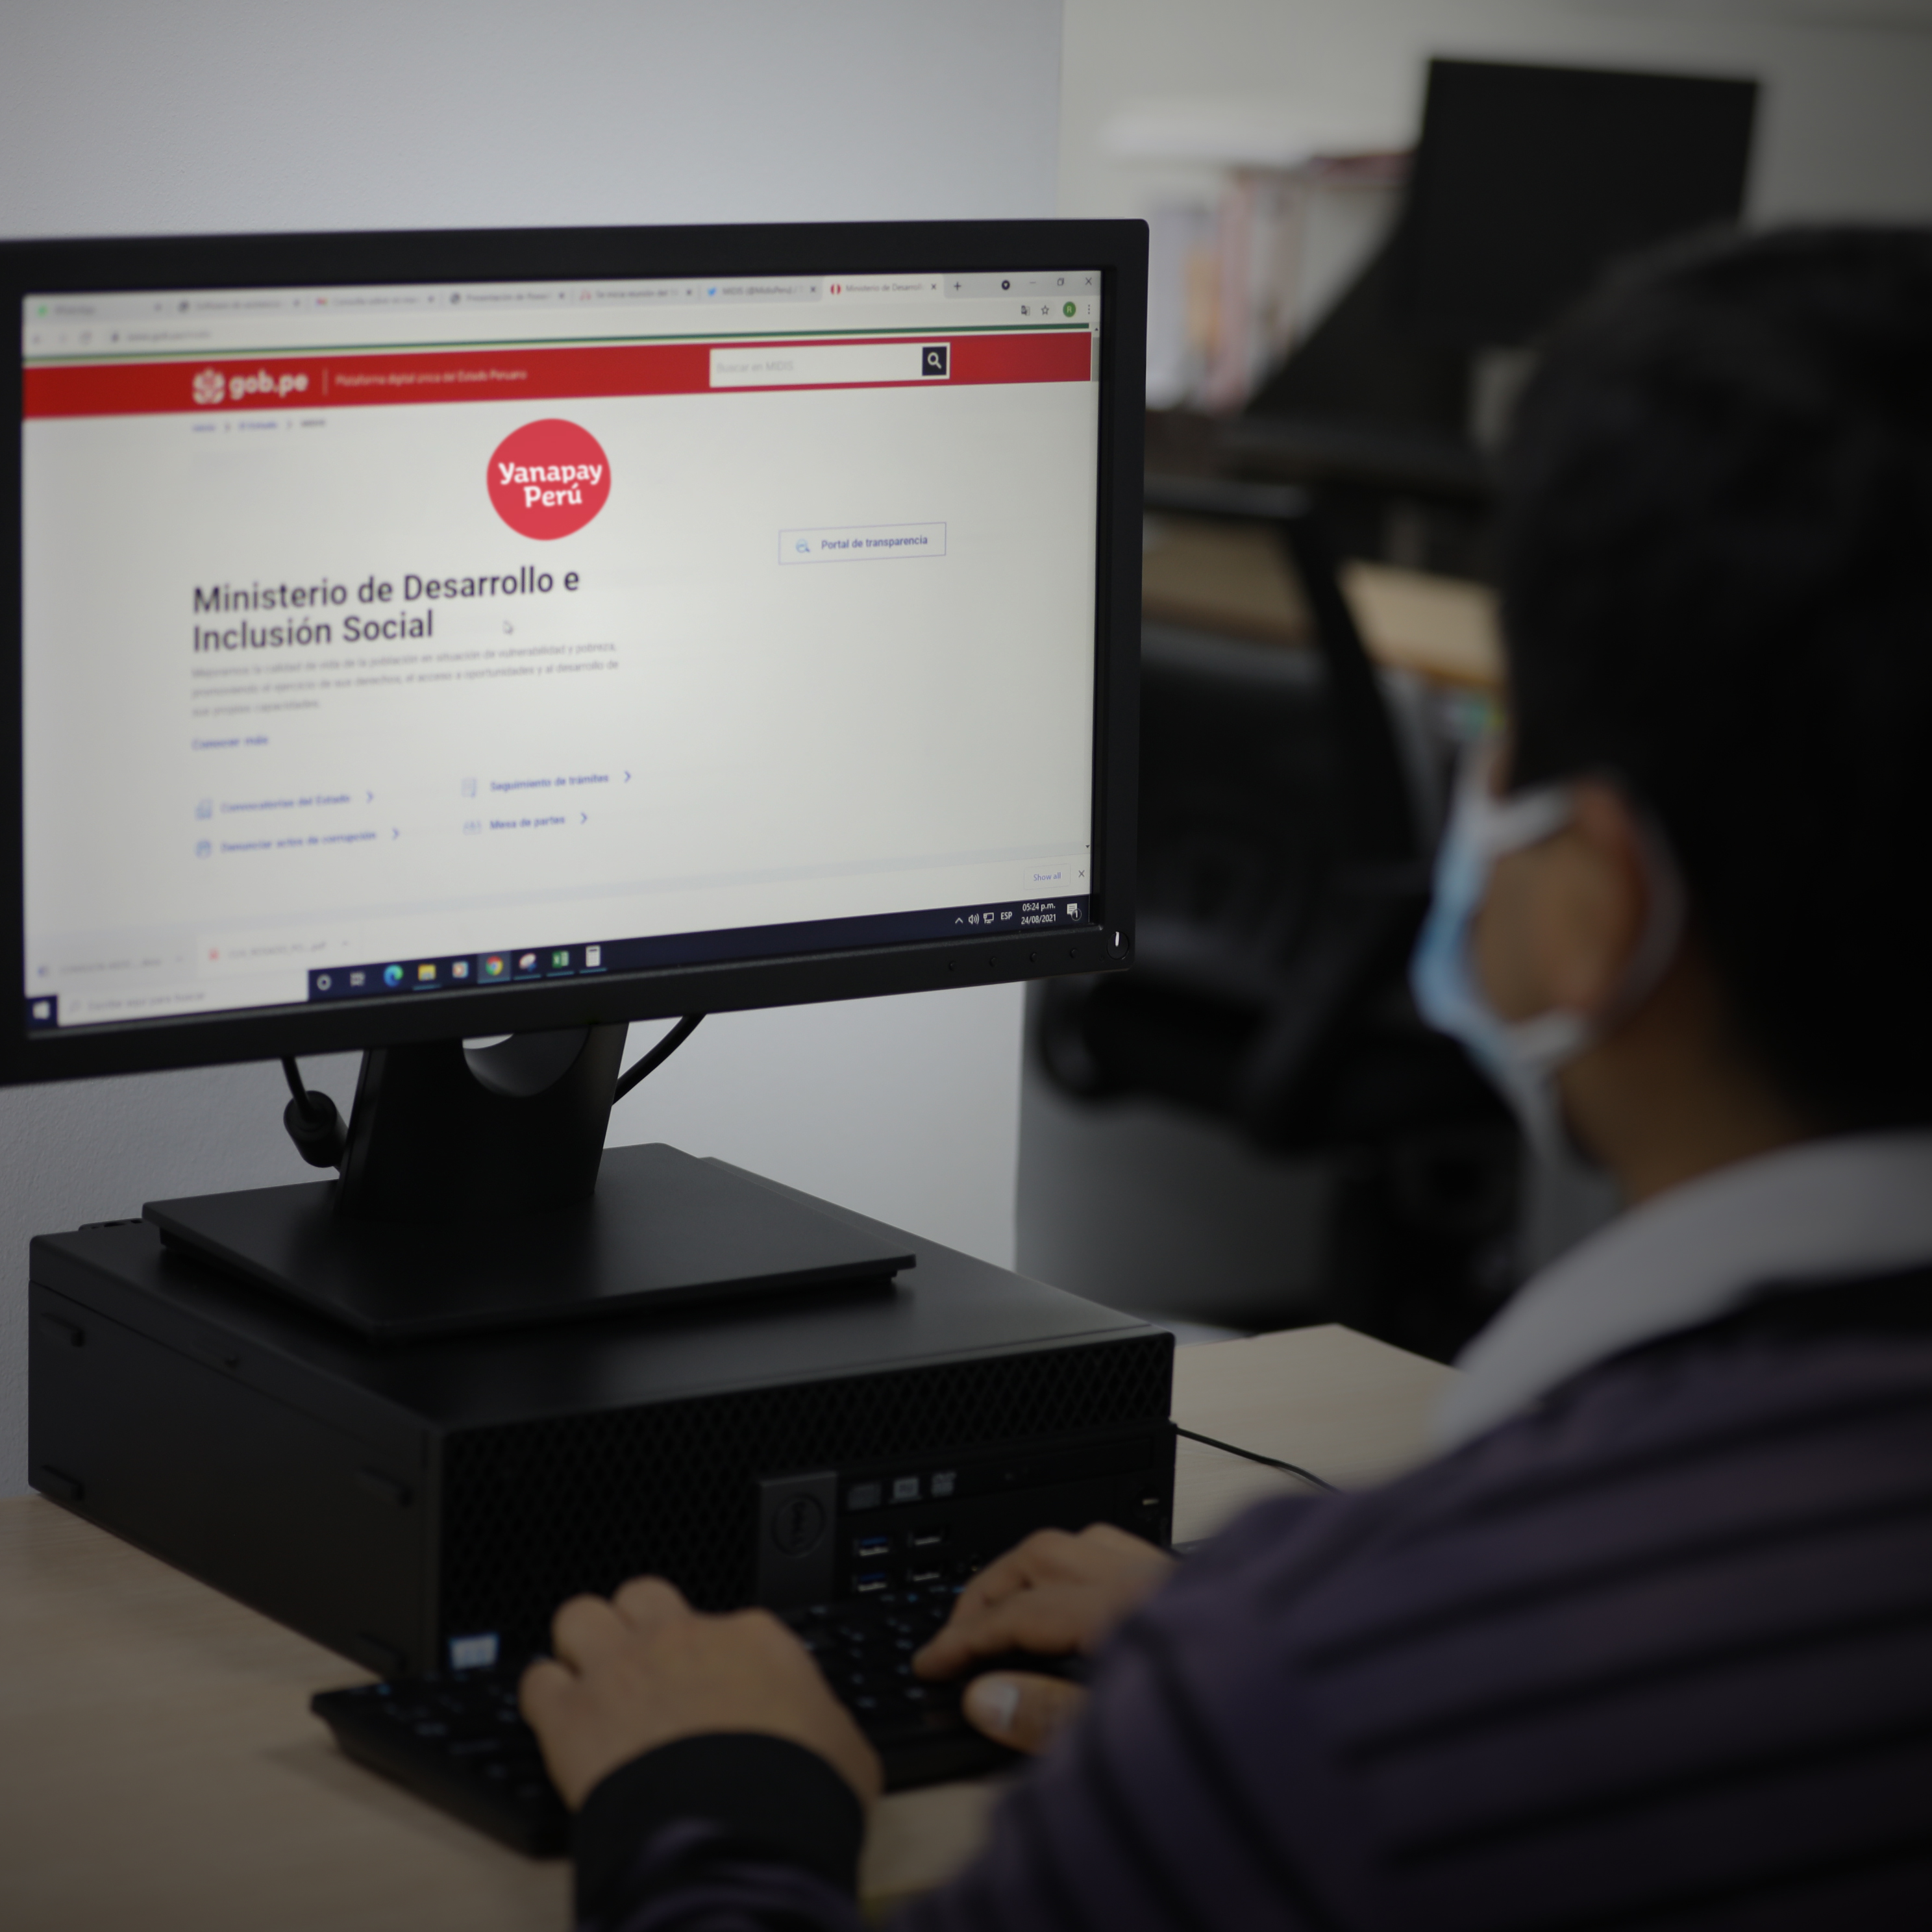 El bono se comenzará a entregar desde el 8 de setiembre. Días antes se publciaría recién la plataforma web por el que la población podrá consultar si es beneficiarios del Yanaoay Perú. Foto: MIDIS